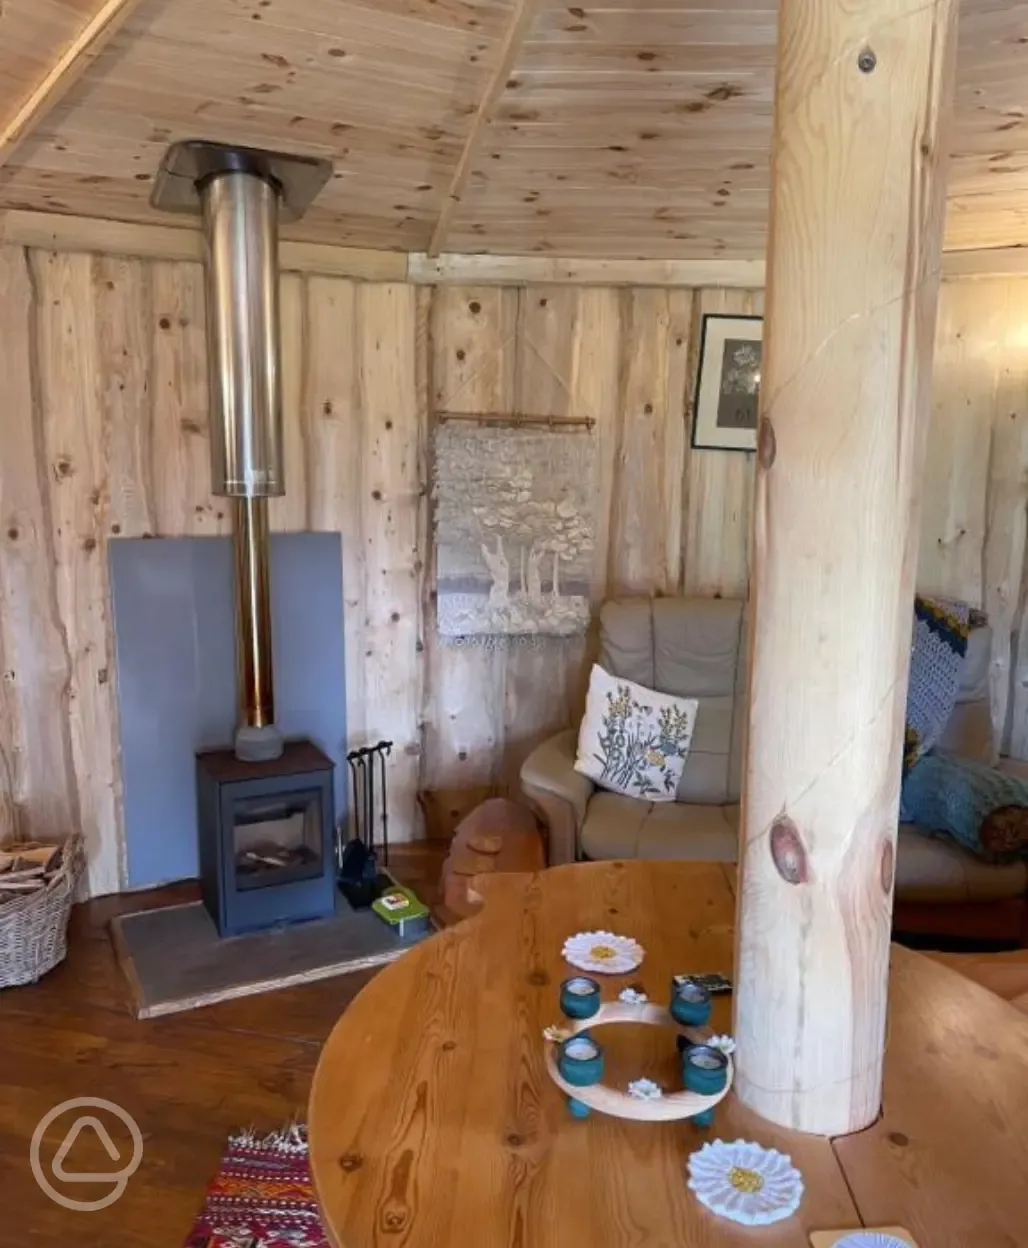  Daisy Roundhouse Yurt wood burner